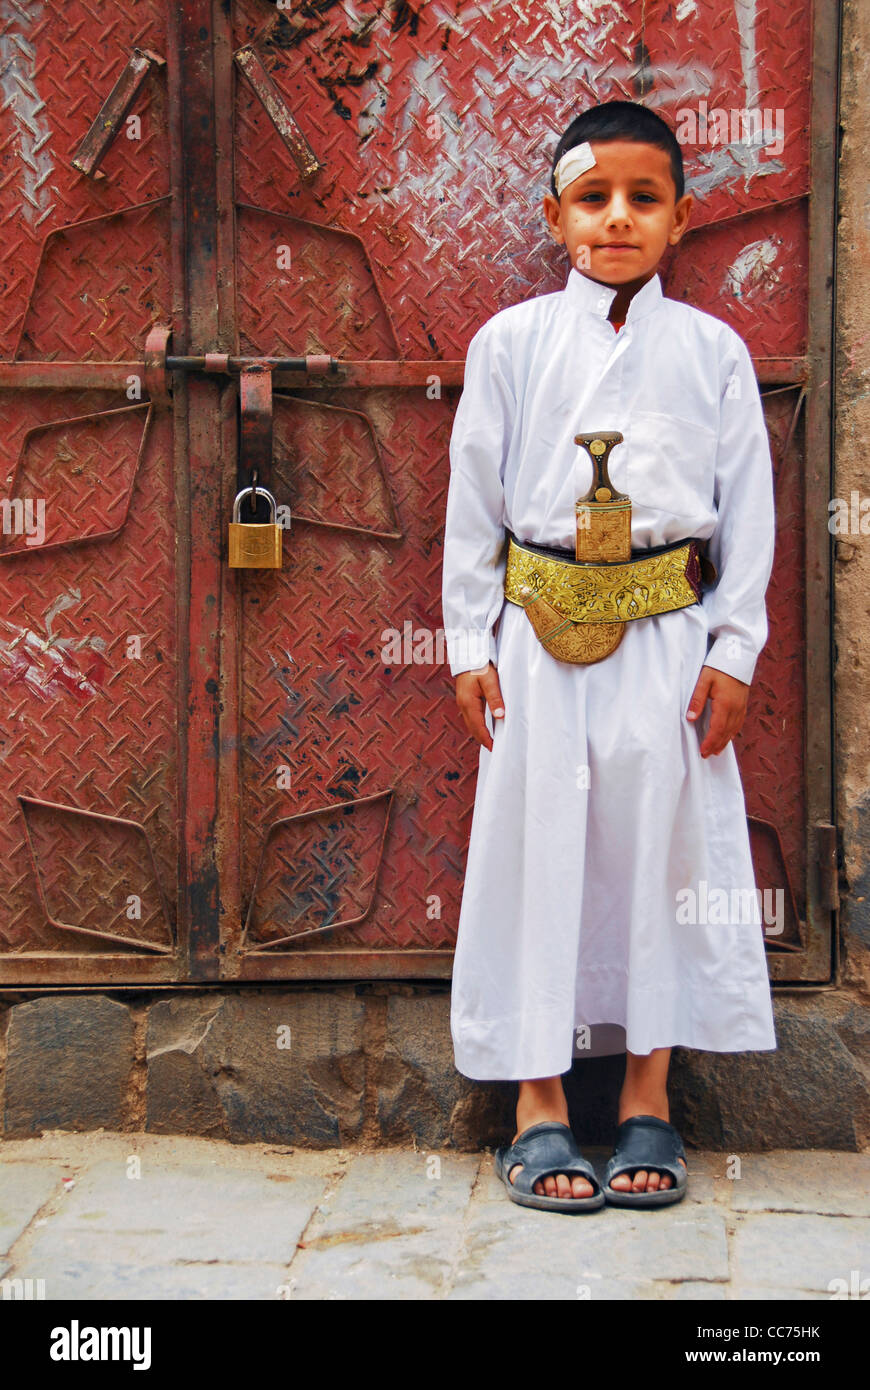 Jemen, Sanaa, Portrait eines wenig traditionell gekleideten Jungen stand vor verschlossenen metallischen Tür Stockfoto